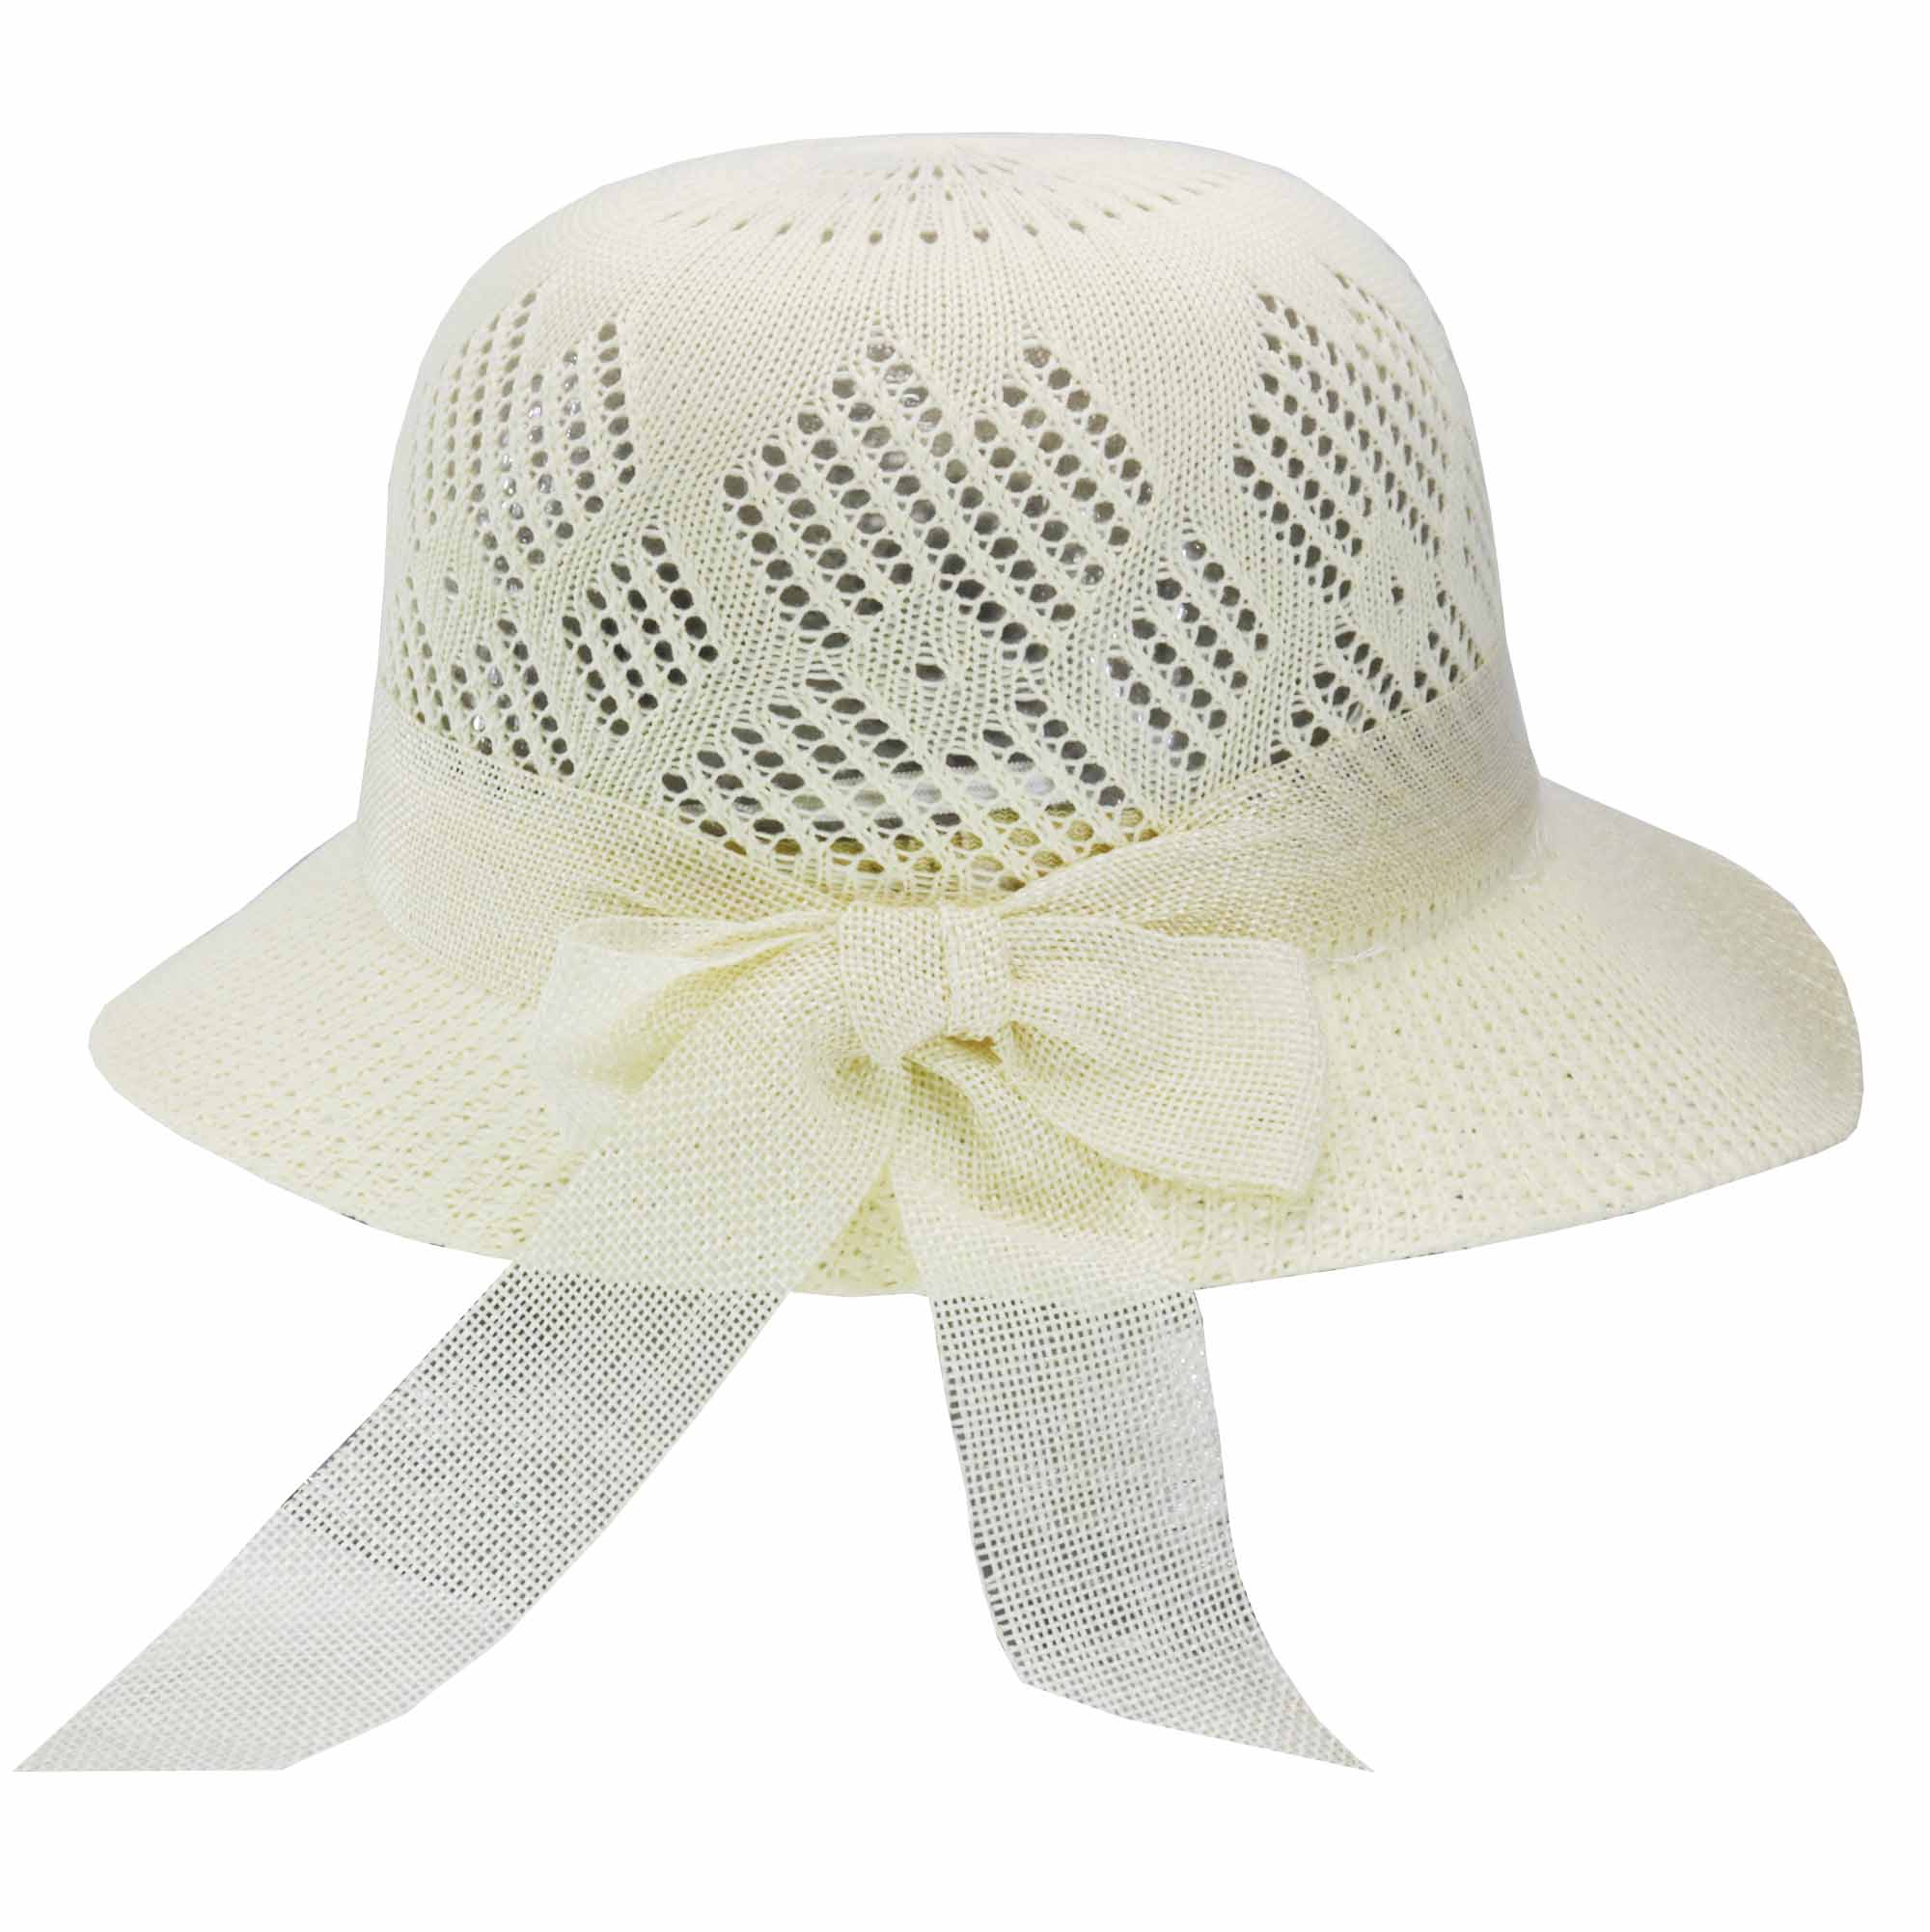 Sombrero capelina ala ancha con cinta 